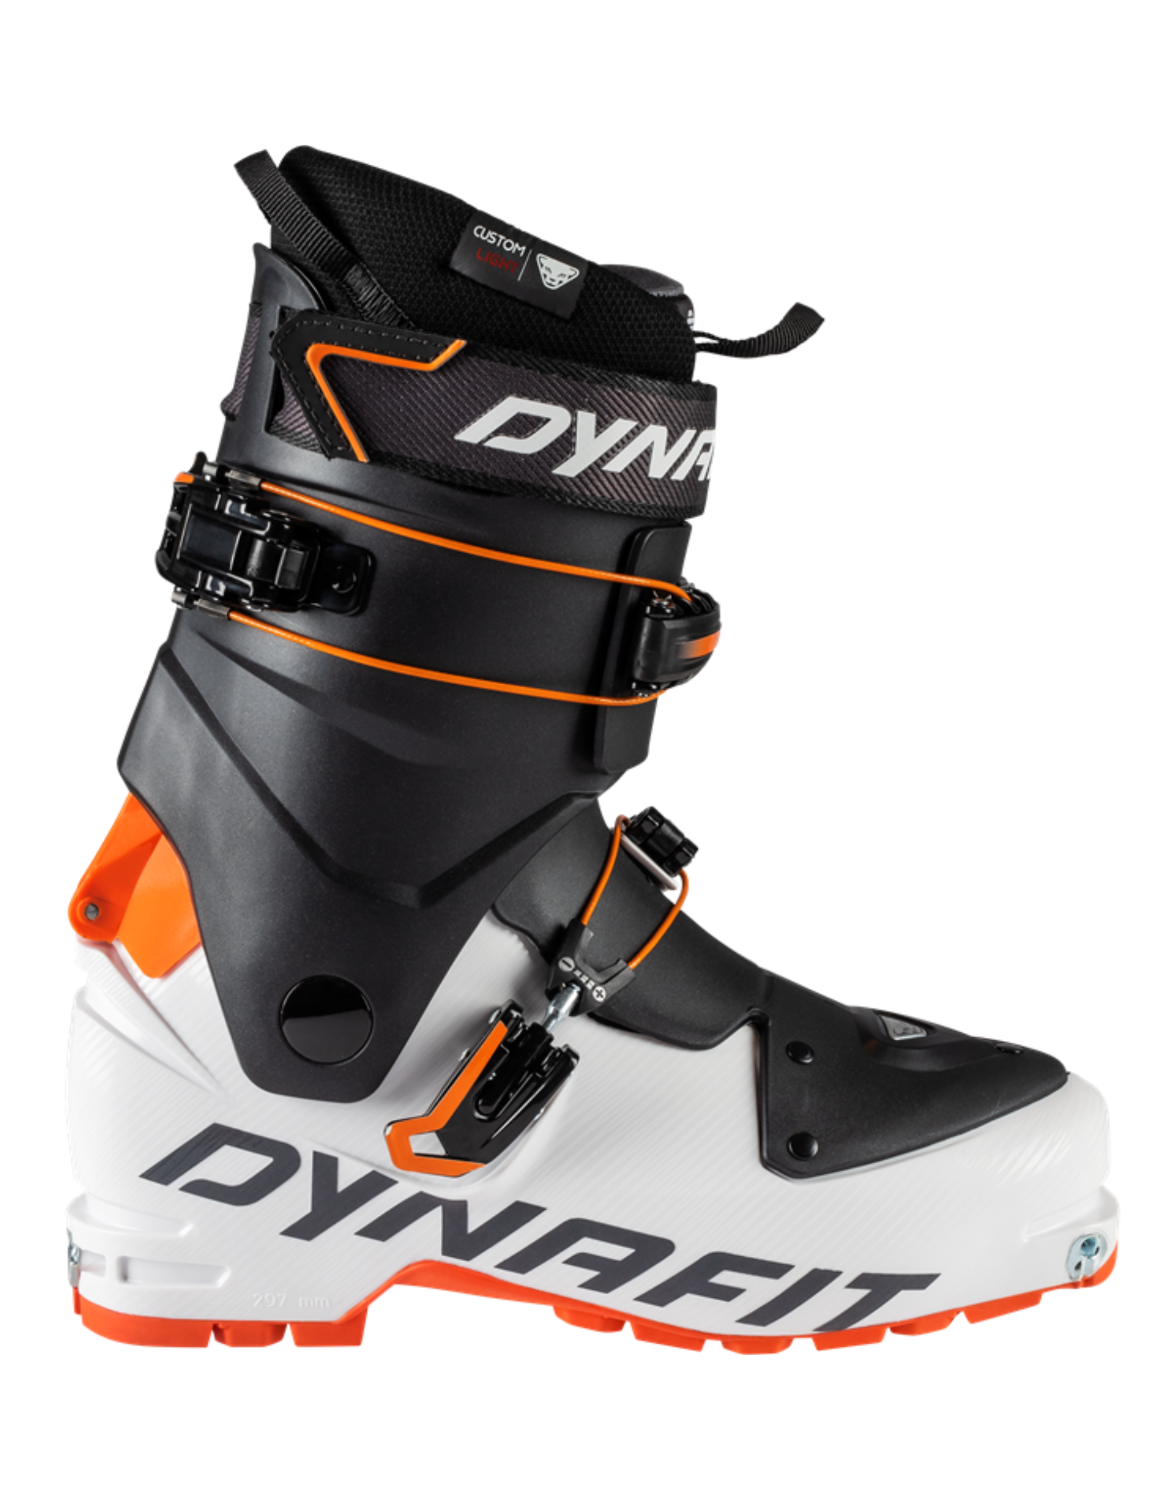 Chaussures de ski de randonnée DYNAFIT Speed pour hommes